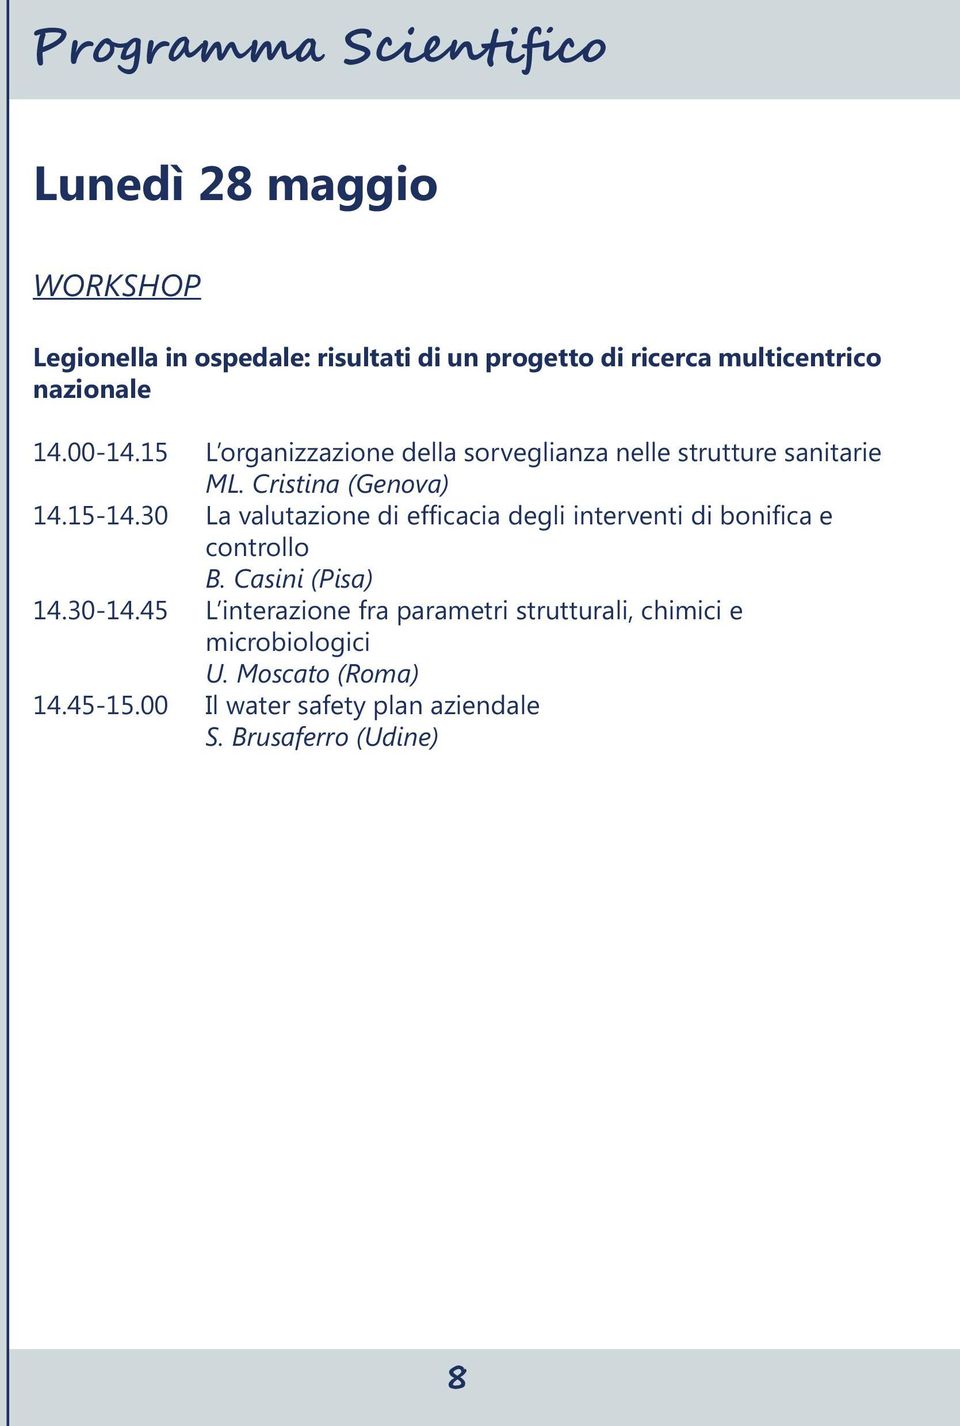 30 La valutazione di efficacia degli interventi di bonifica e controllo B. Casini (Pisa) 14.30-14.